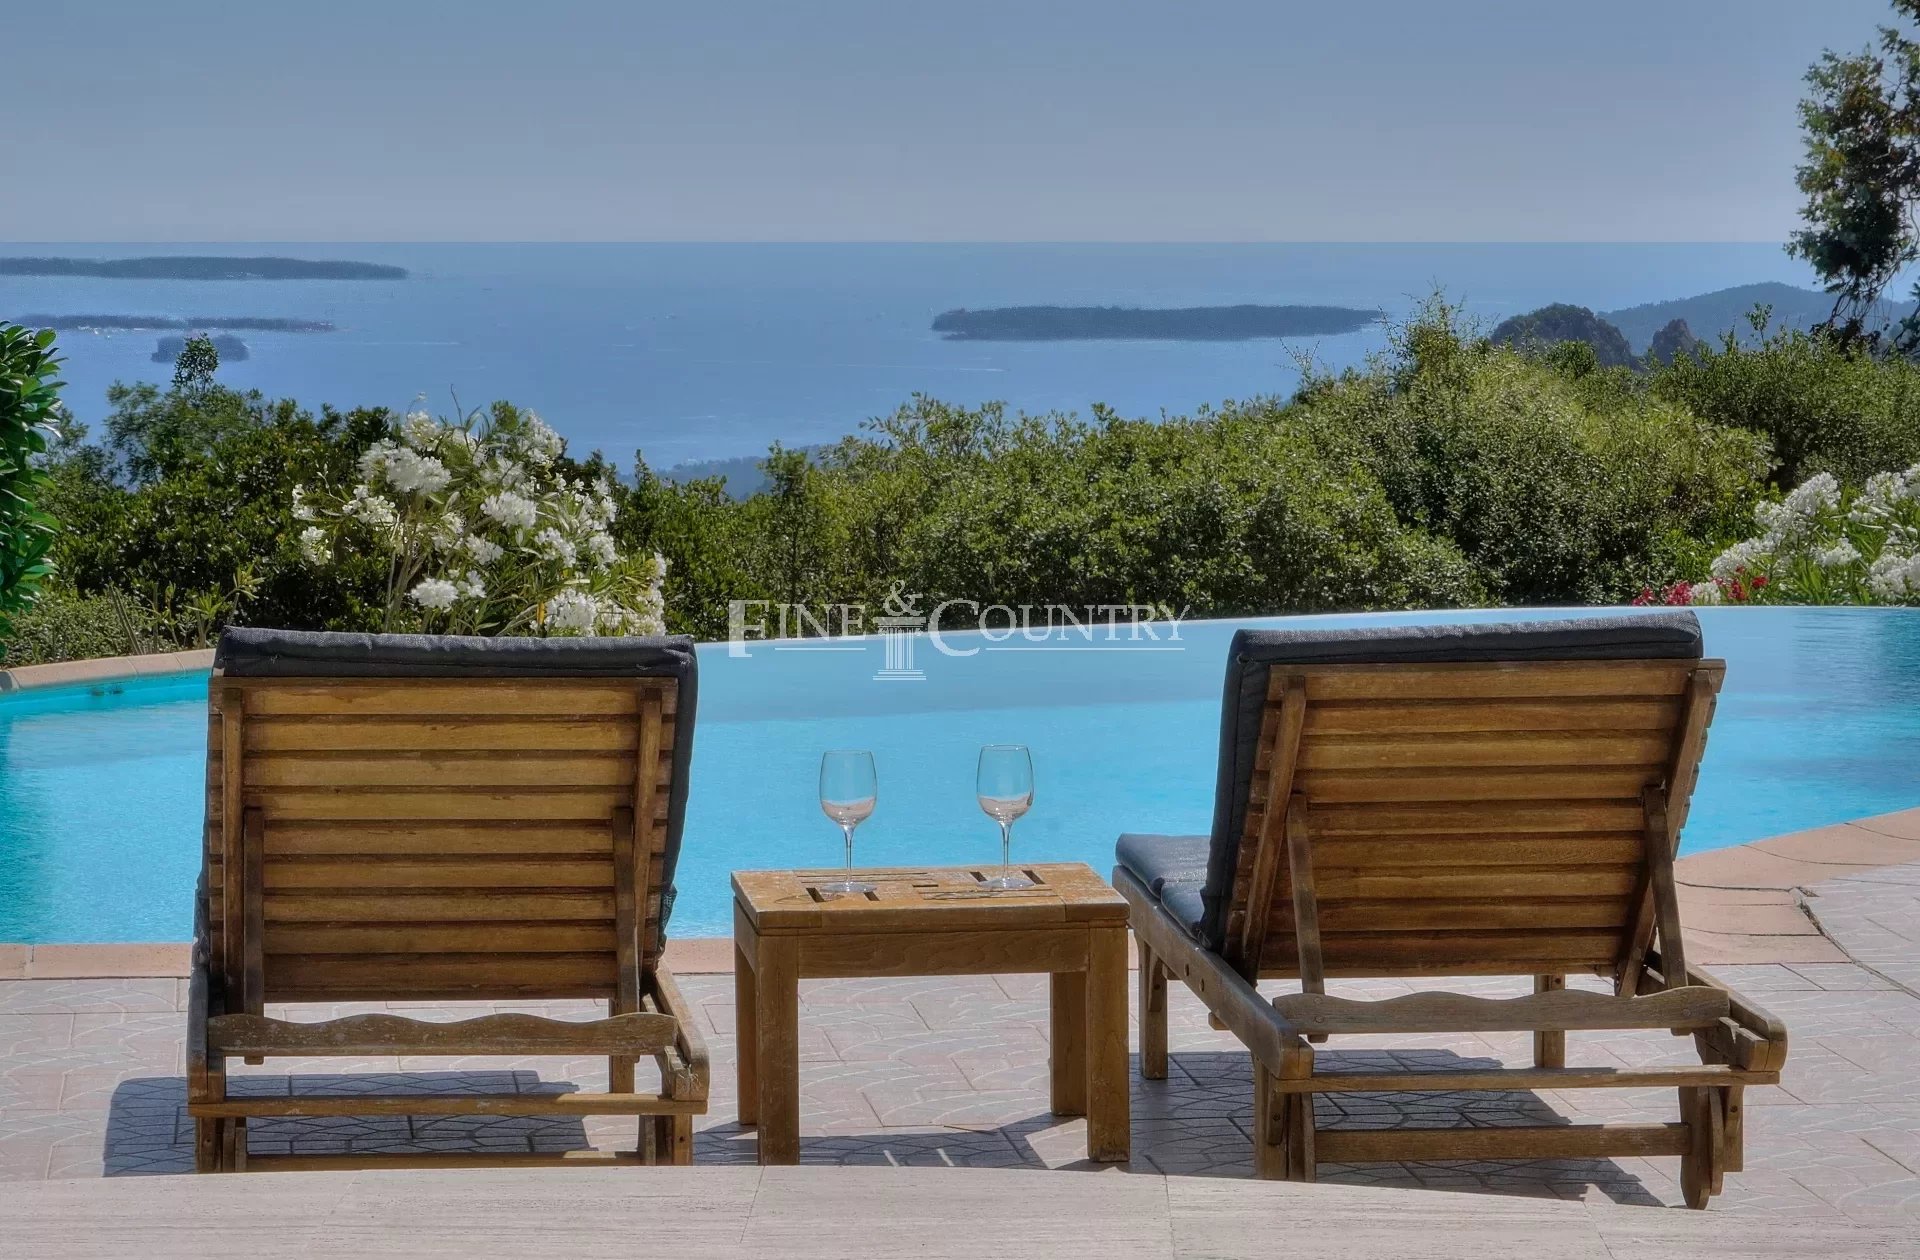 Sea View Villa For Sale in Mandelieu La Napoule